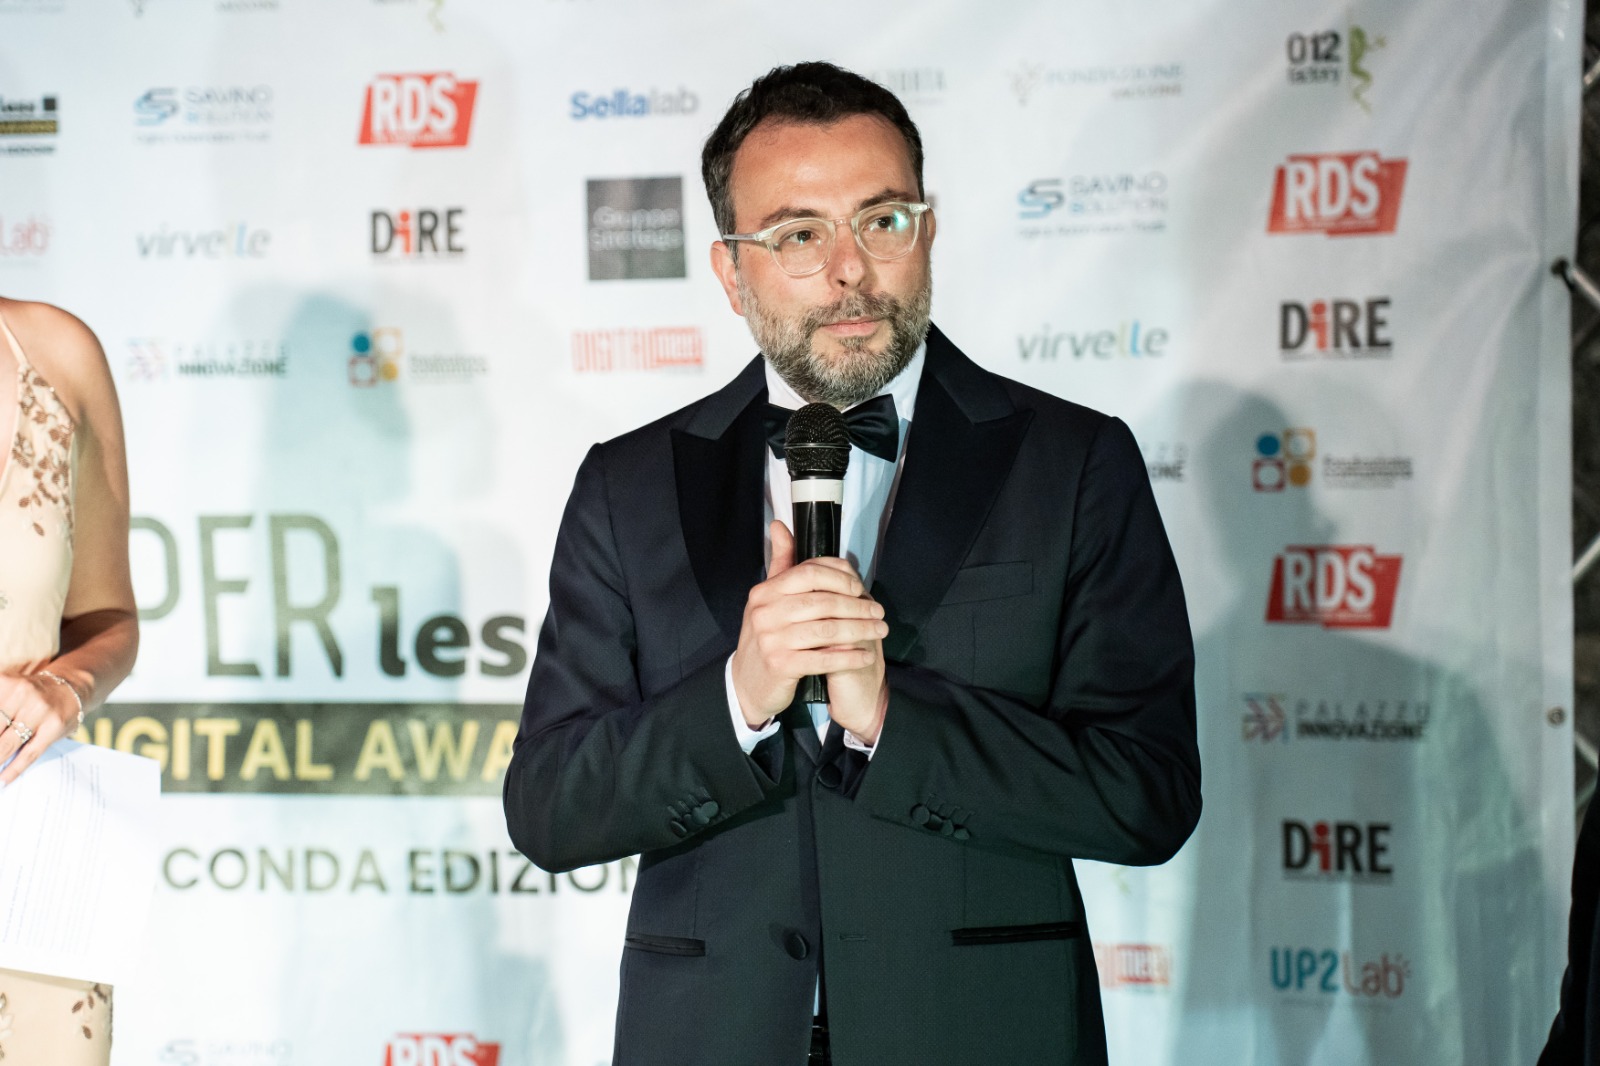 Nicola Savino, creador de los Paperless & Digital Awards